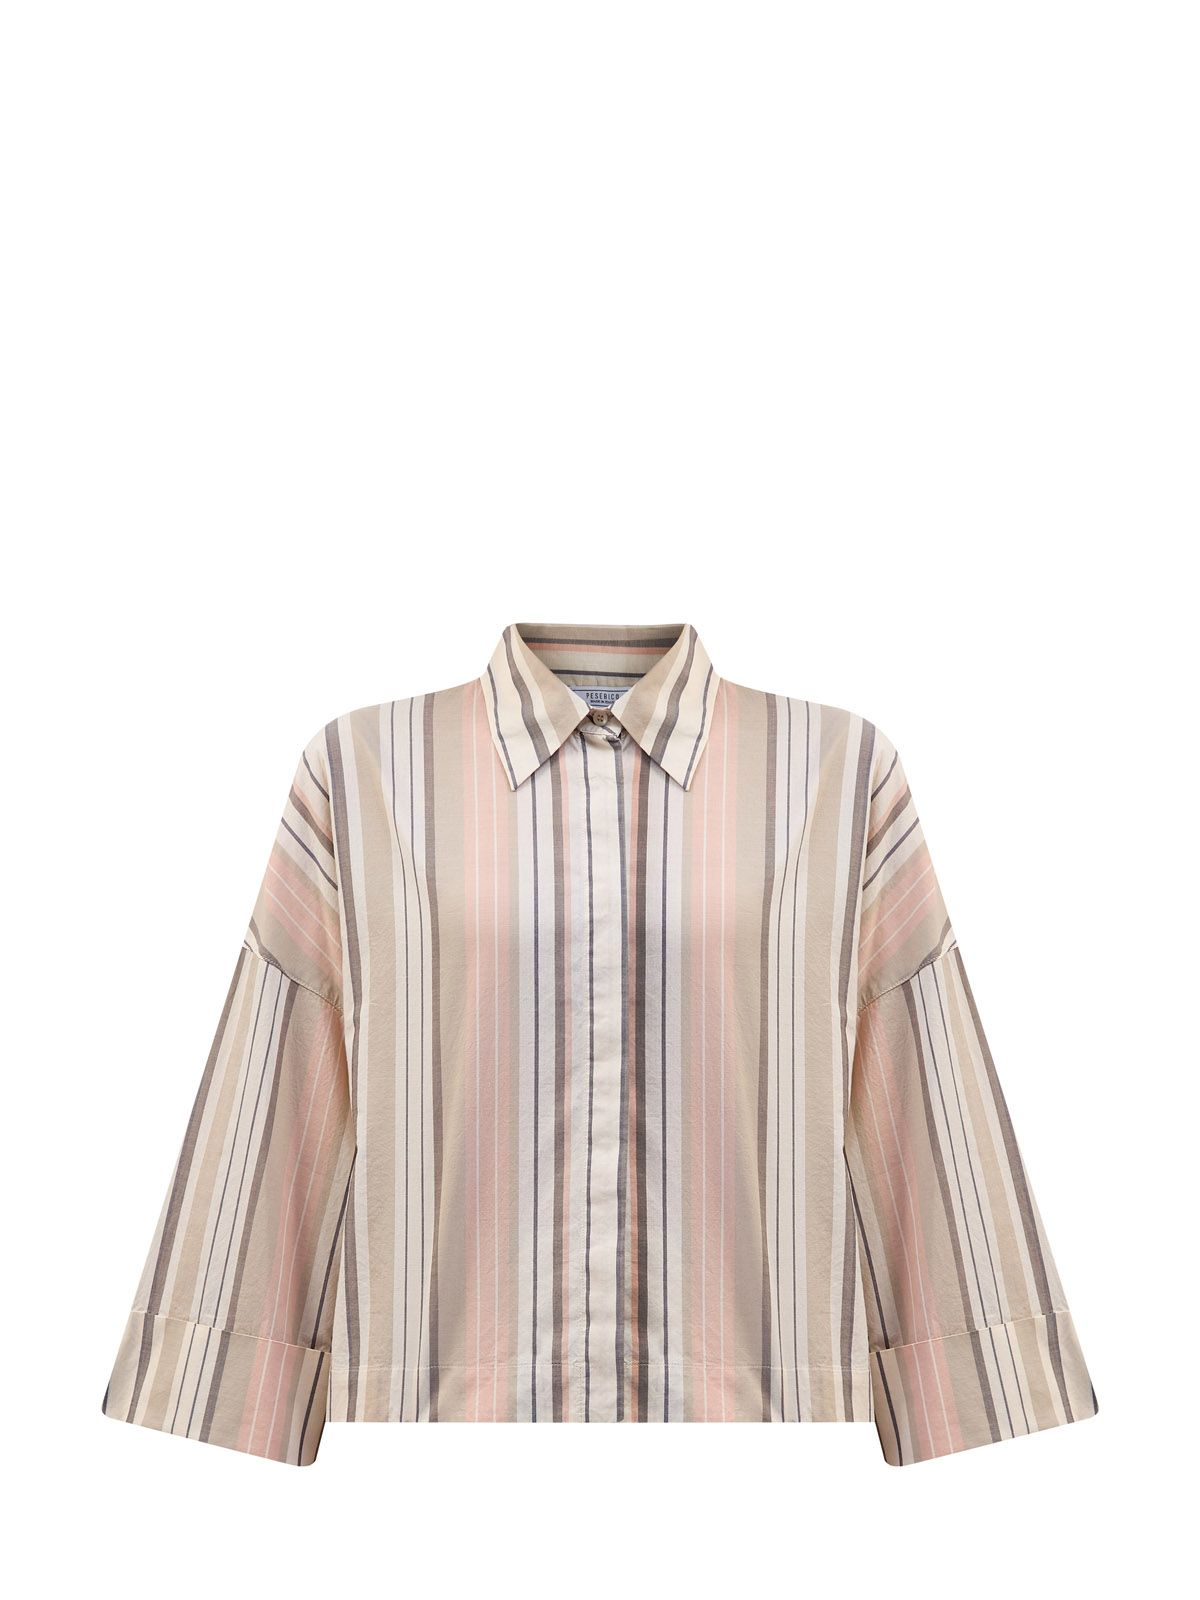 Укороченная рубашка из хлопкового поплина с принтом в полоску PESERICO, цвет бежевый, размер 40;42;44